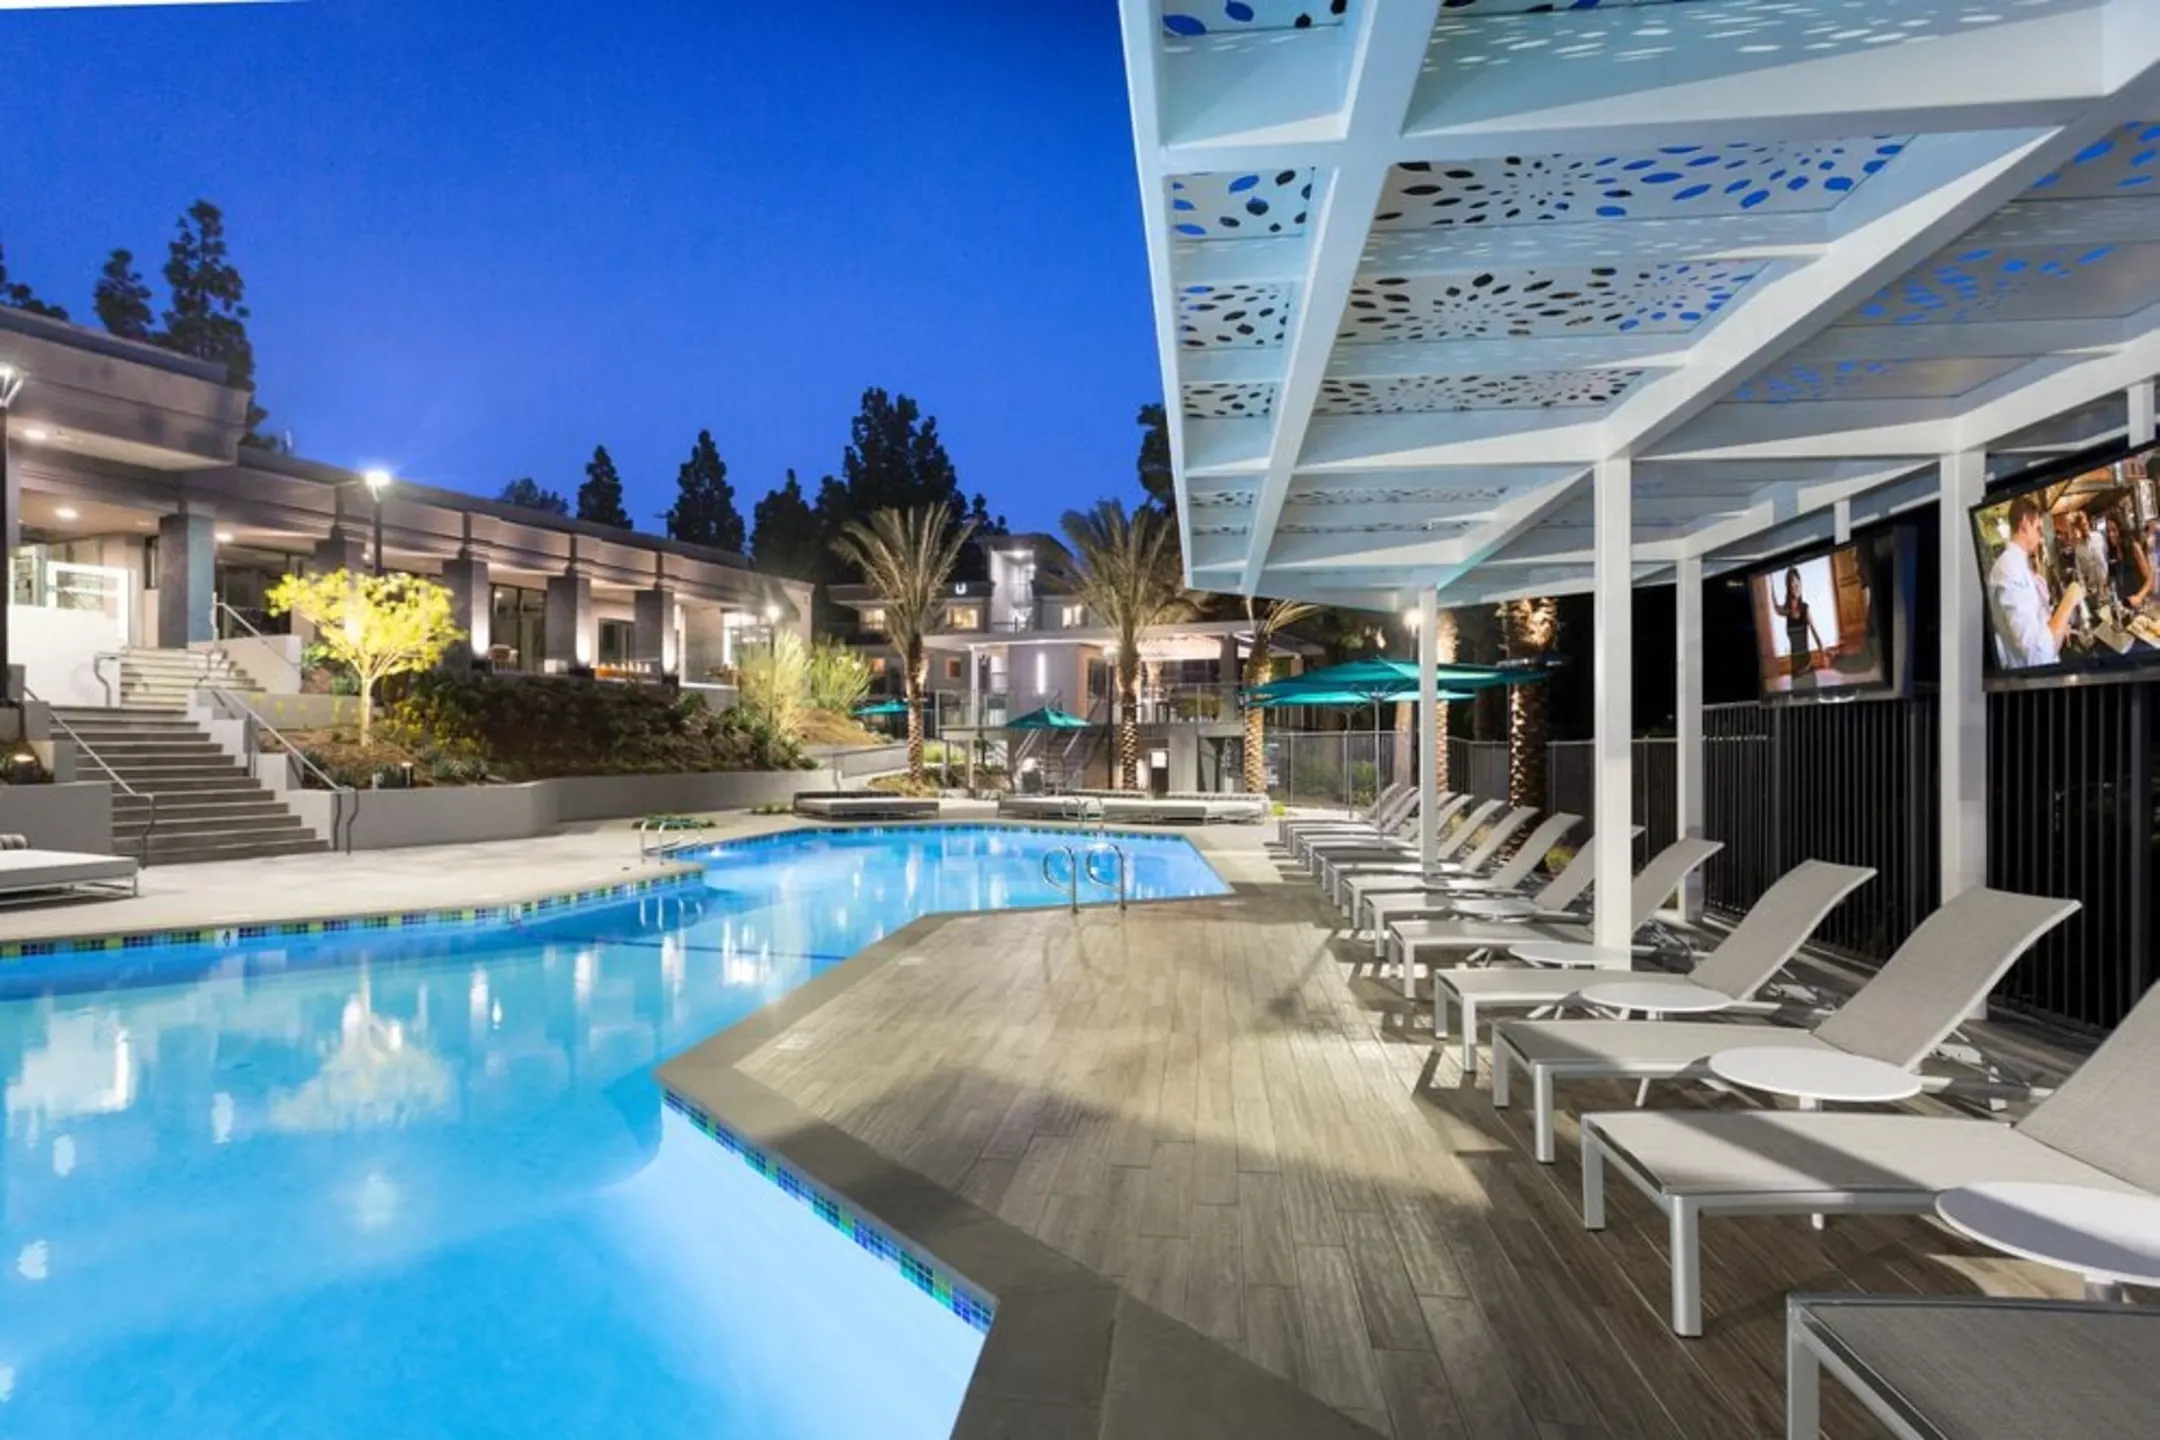 Pool - AVA Toluca Hills - Los Angeles, CA